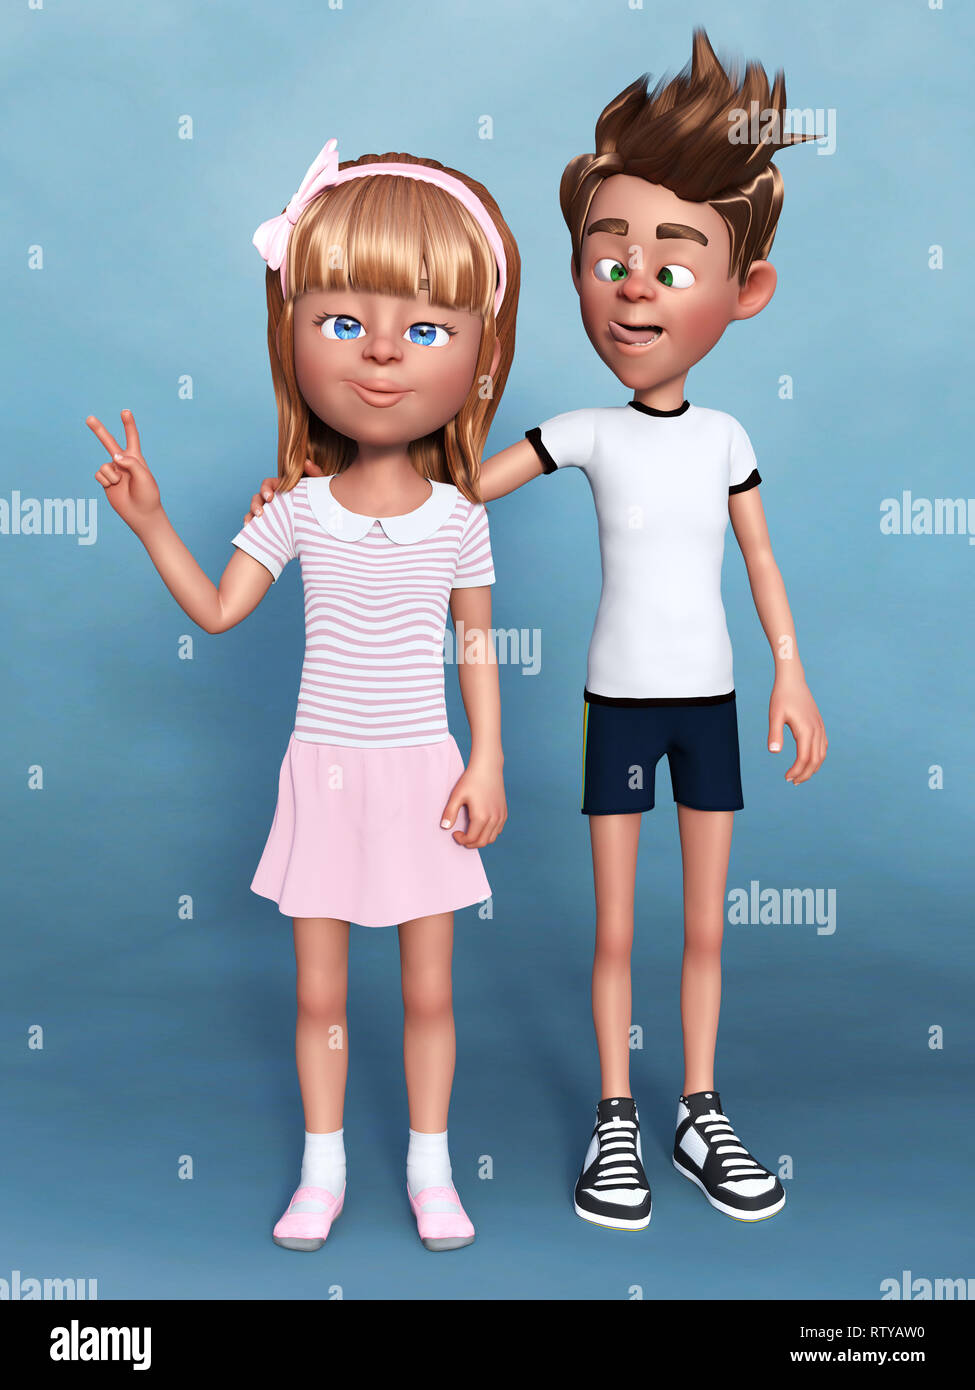 Le rendu 3D d'un dessin animé garçon faisant un visage stupide, plaisantant avec sa soeur. Un sibbling portrait. Fond bleu. Banque D'Images